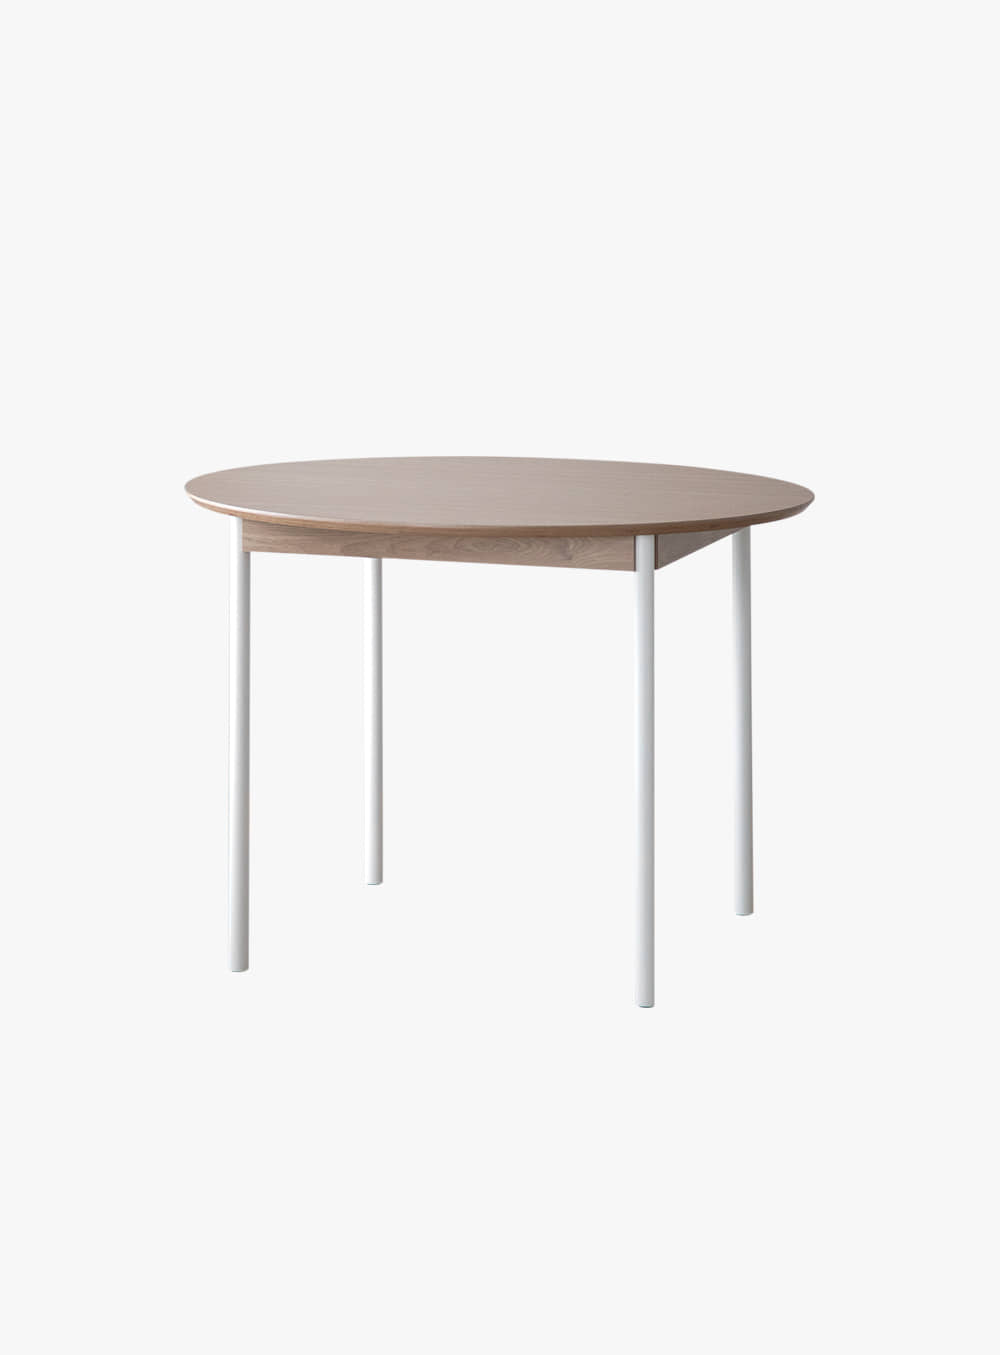 무니토 - NEAT TABLE / CIRCLE